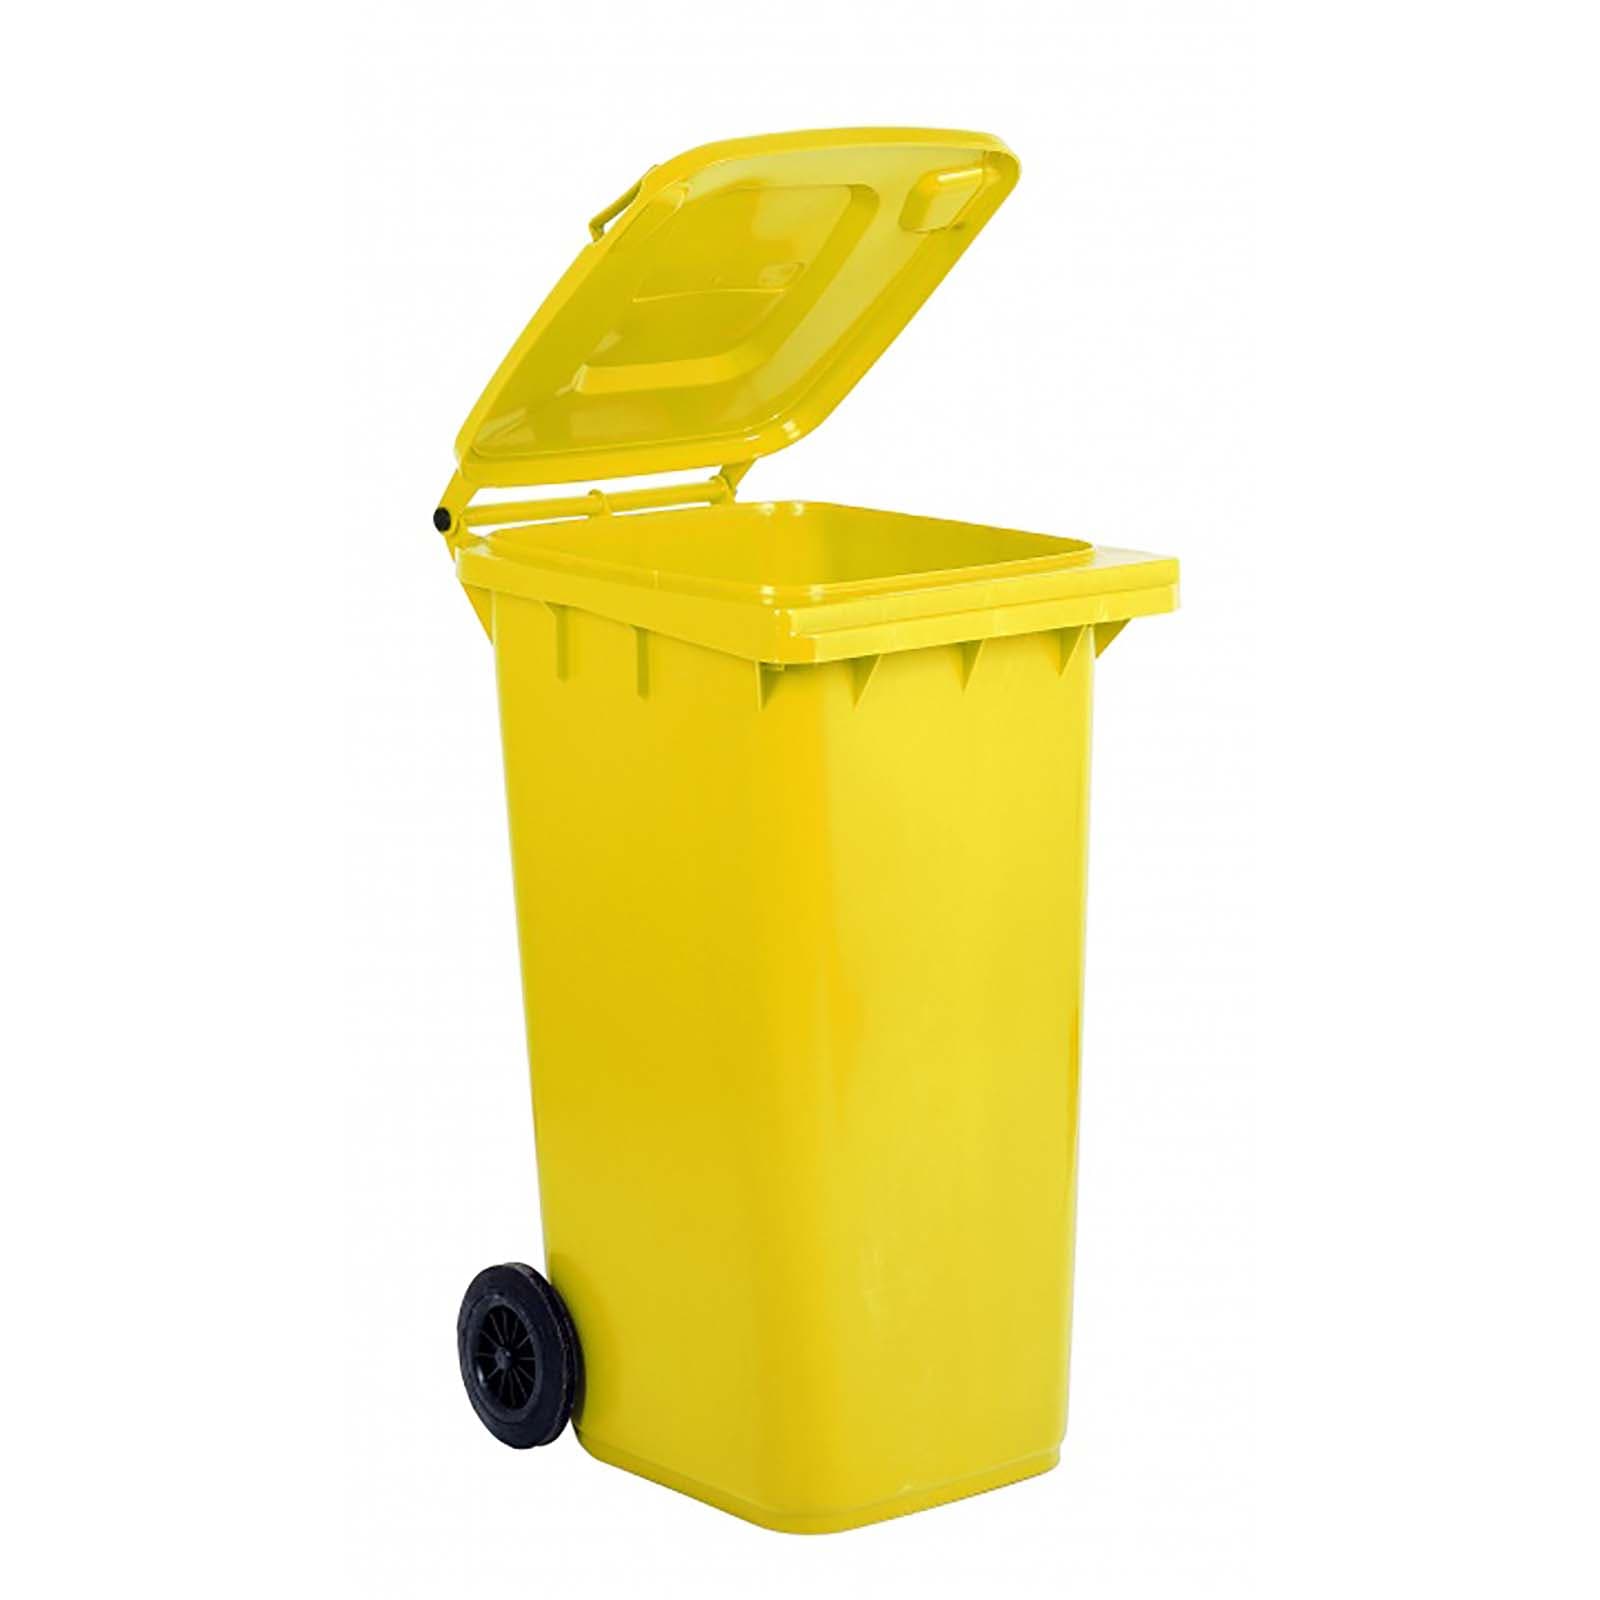 6 ANTRACITE COMPLETO ral7016 per 120 LITRI bidoni della spazzatura 2 scatole dei rifiuti Modello No 